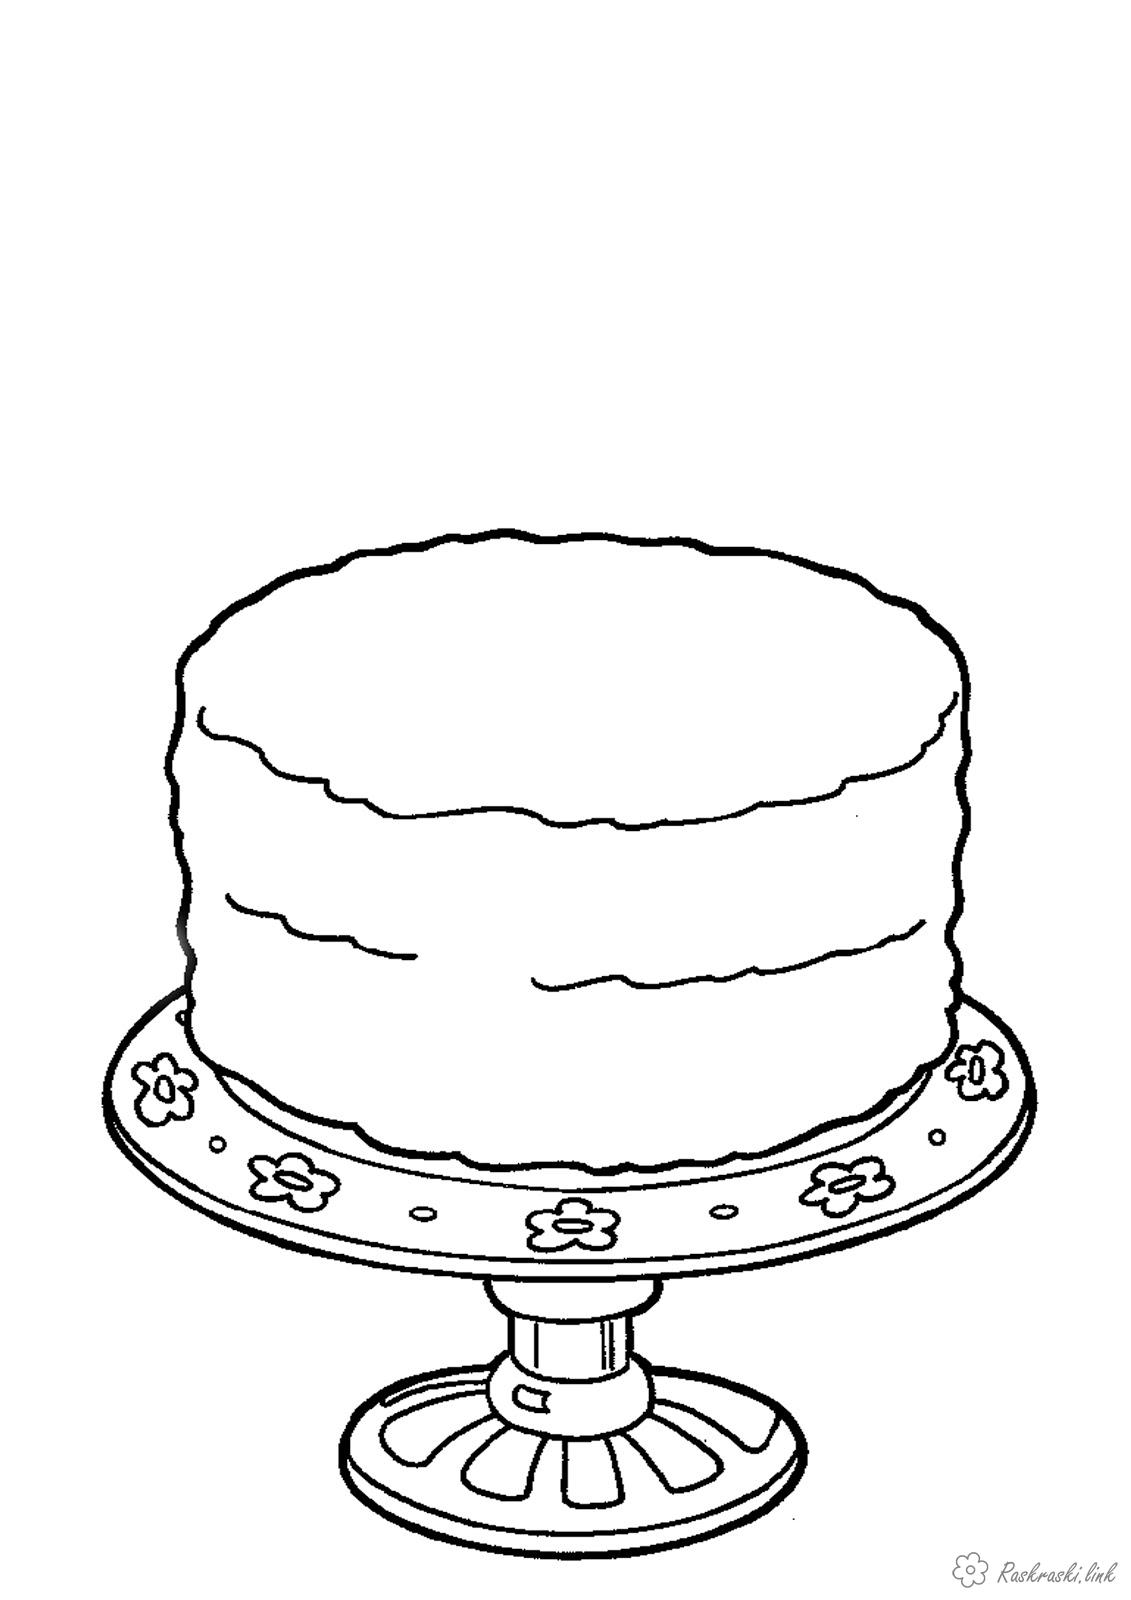 Раскраски Торты и пирожные  Медовый, торт, лежит на красивом блюдце, раскраска